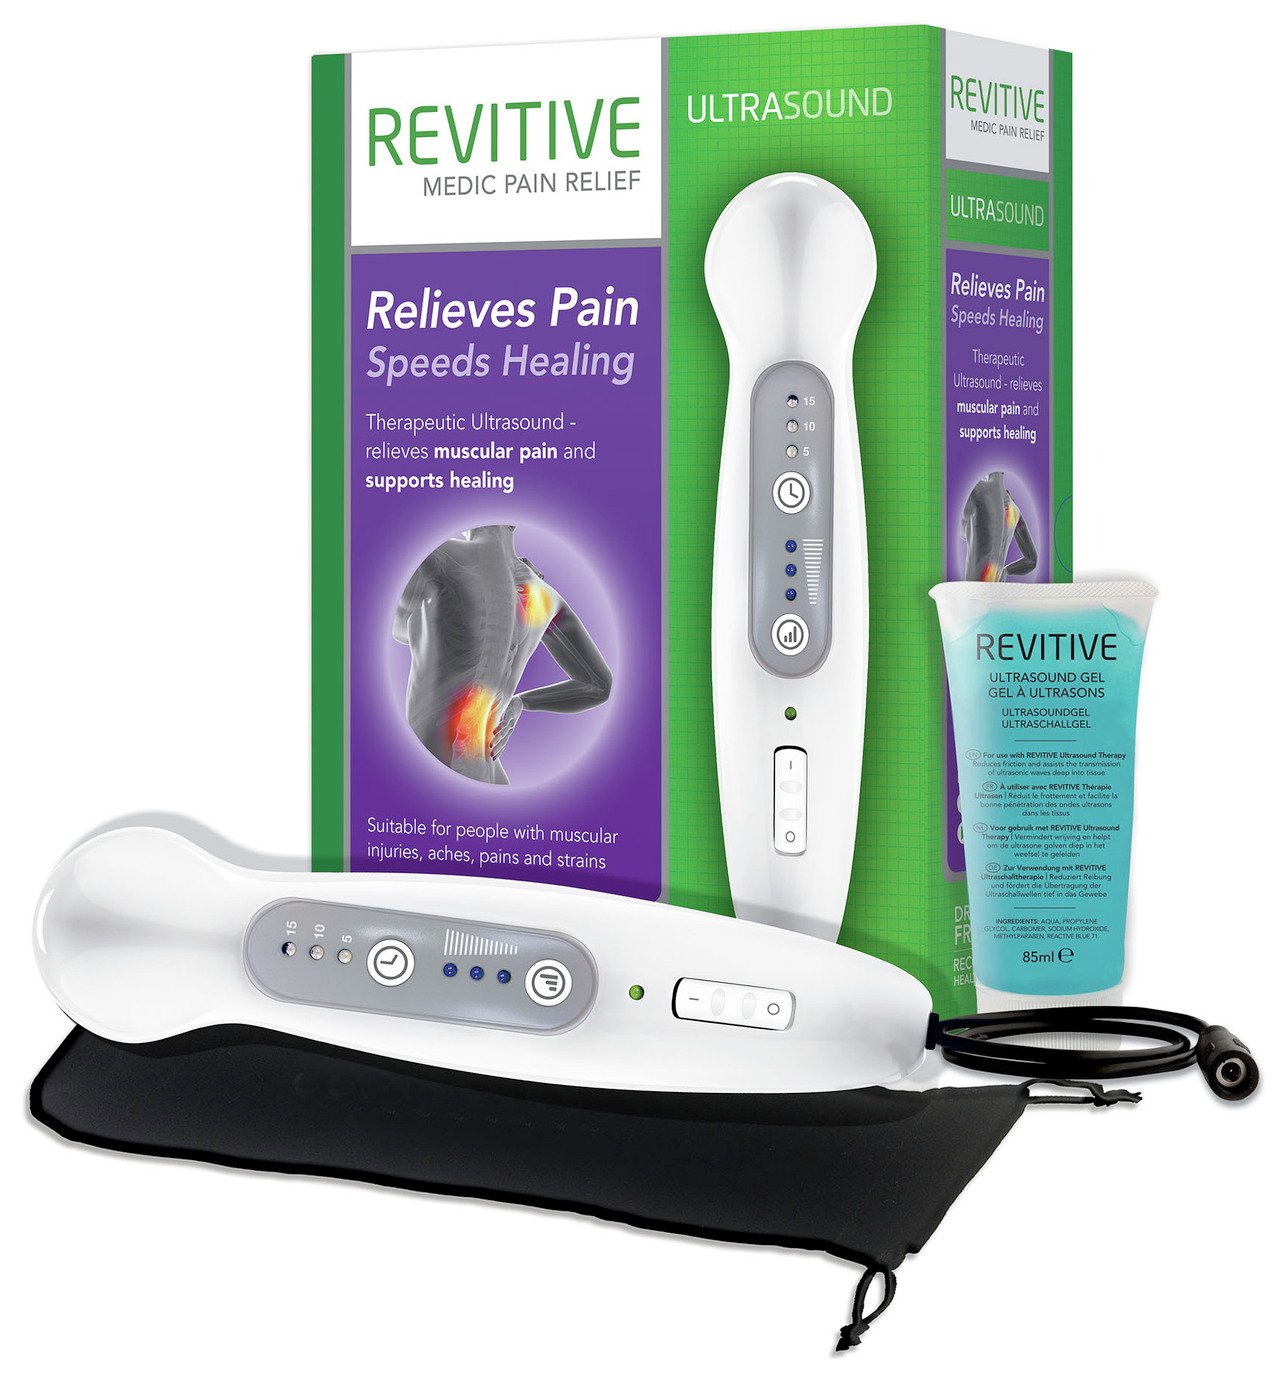 Revitive Ultrasound Device Reviews